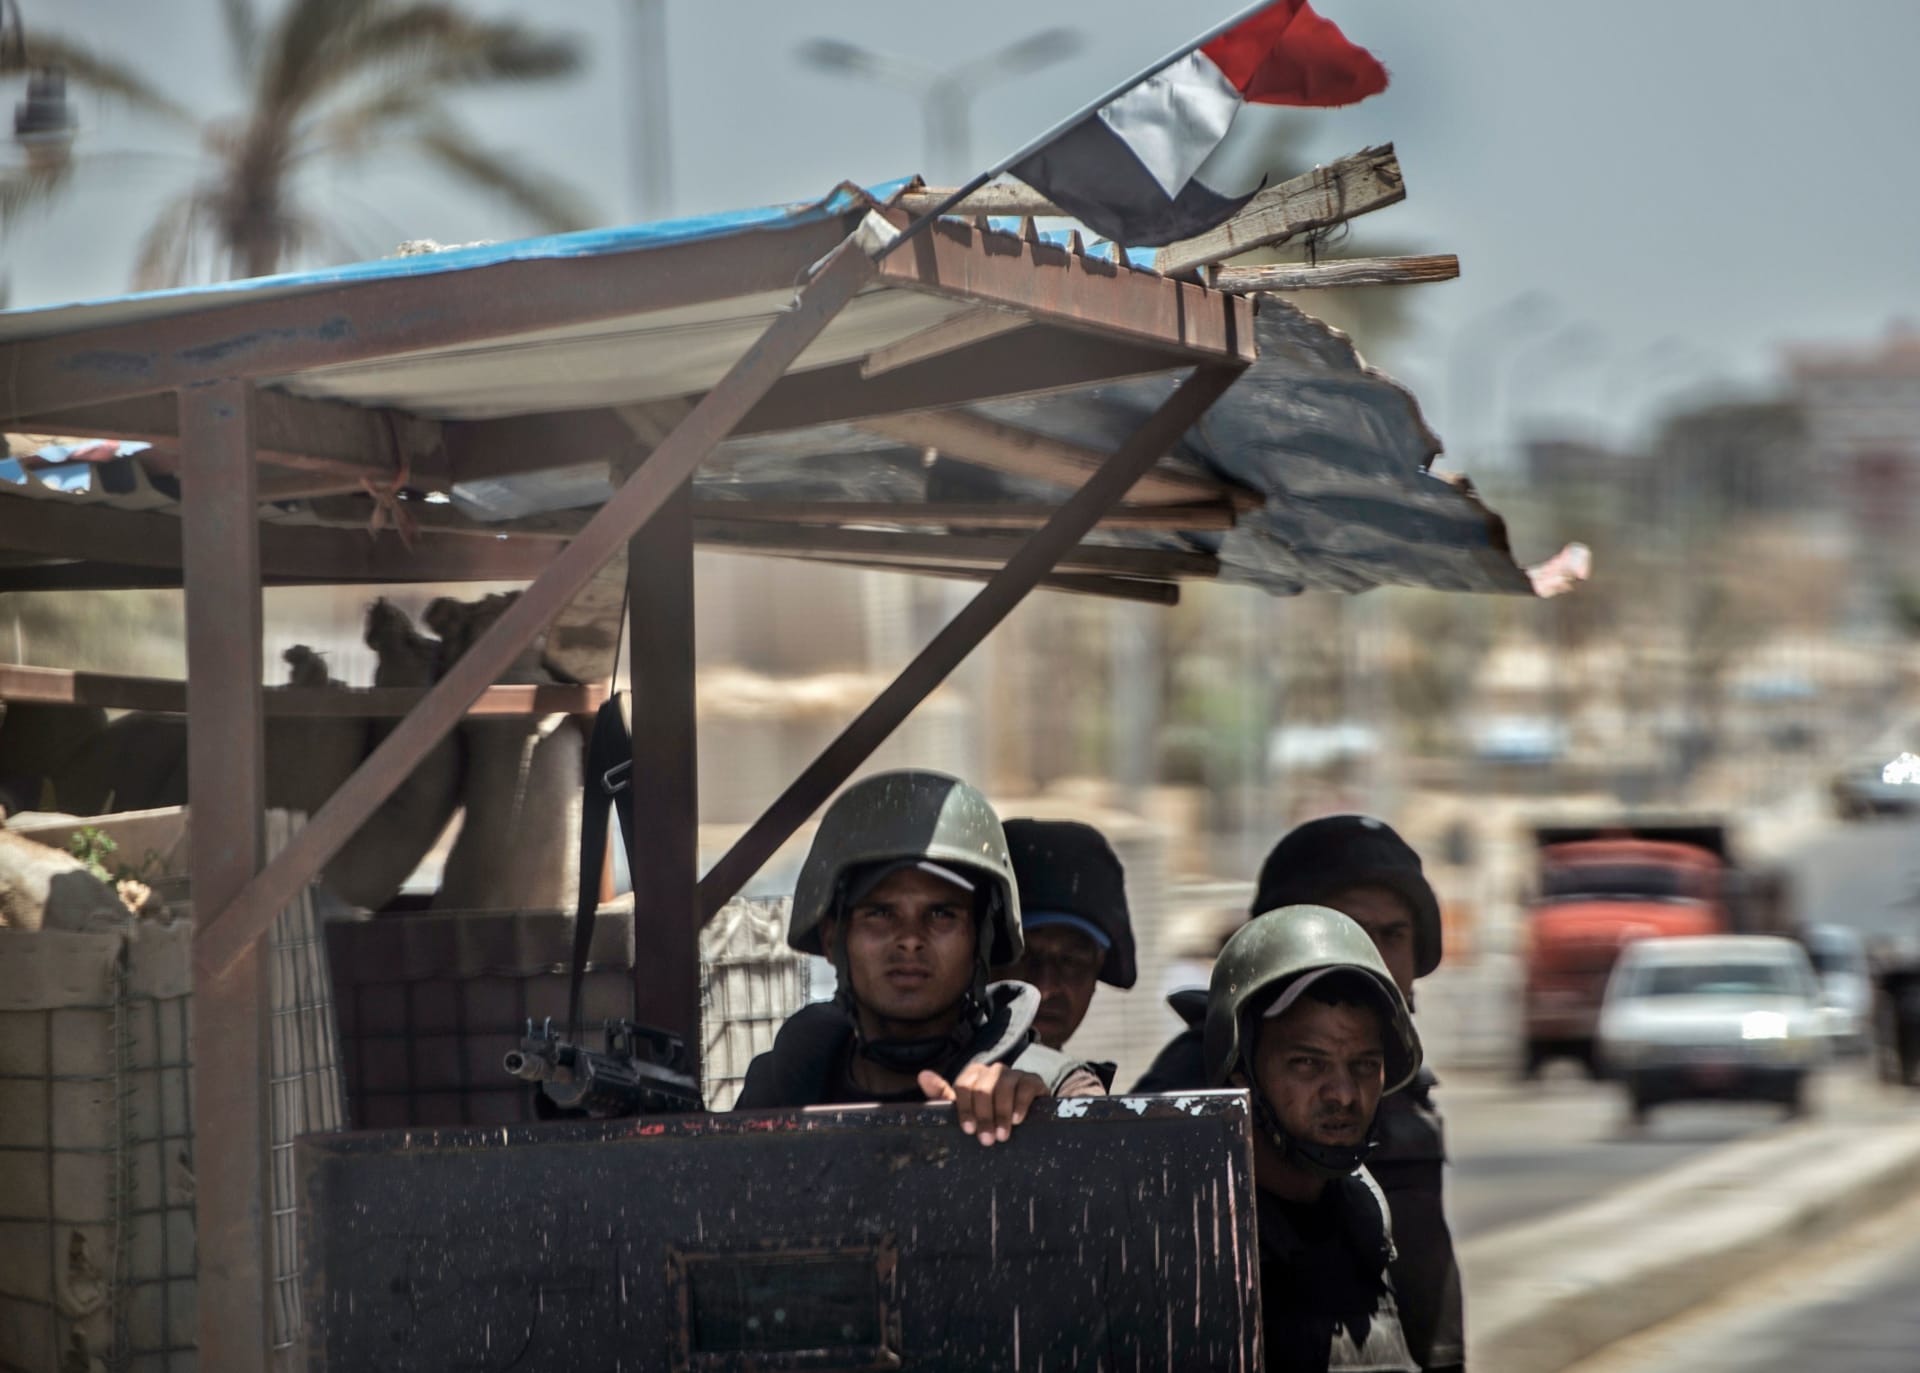 القوات المسلحة المصرية تشكر السودان على مساهمته بعودة "دورية مفقودة" 